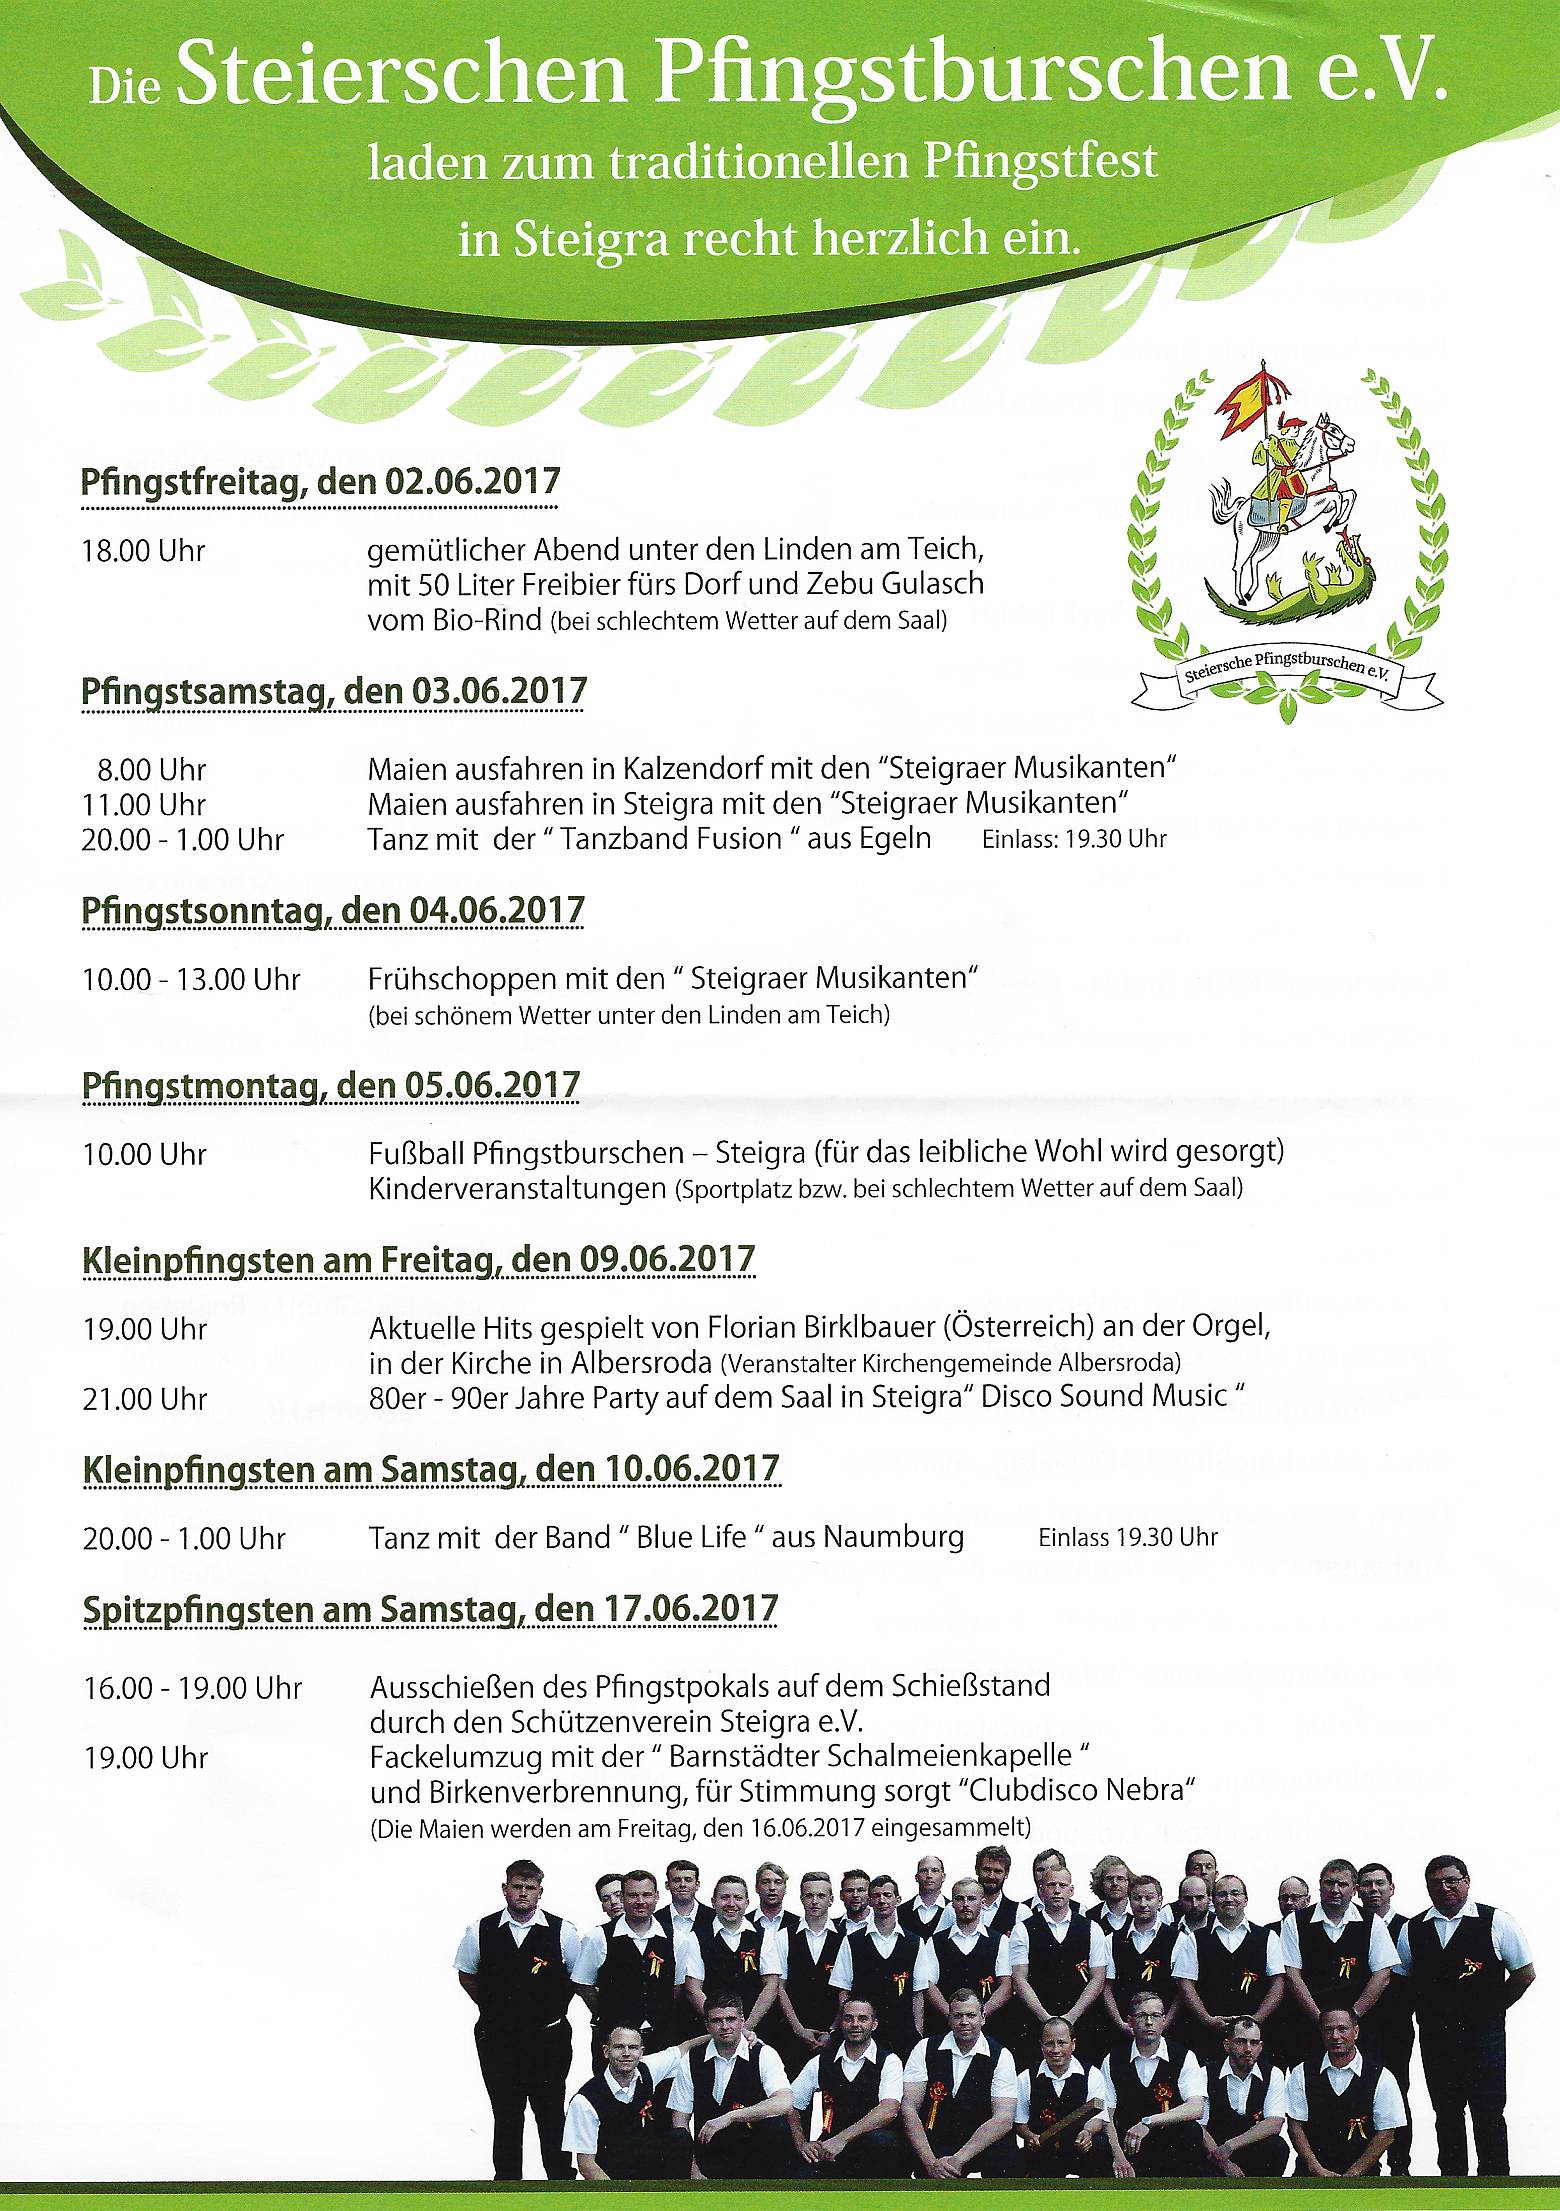 Die 'Steierschen Pfingstburschen e.V.' laden ein zum traditionellen Pfingstfest in Steigra 2017 - und zurck